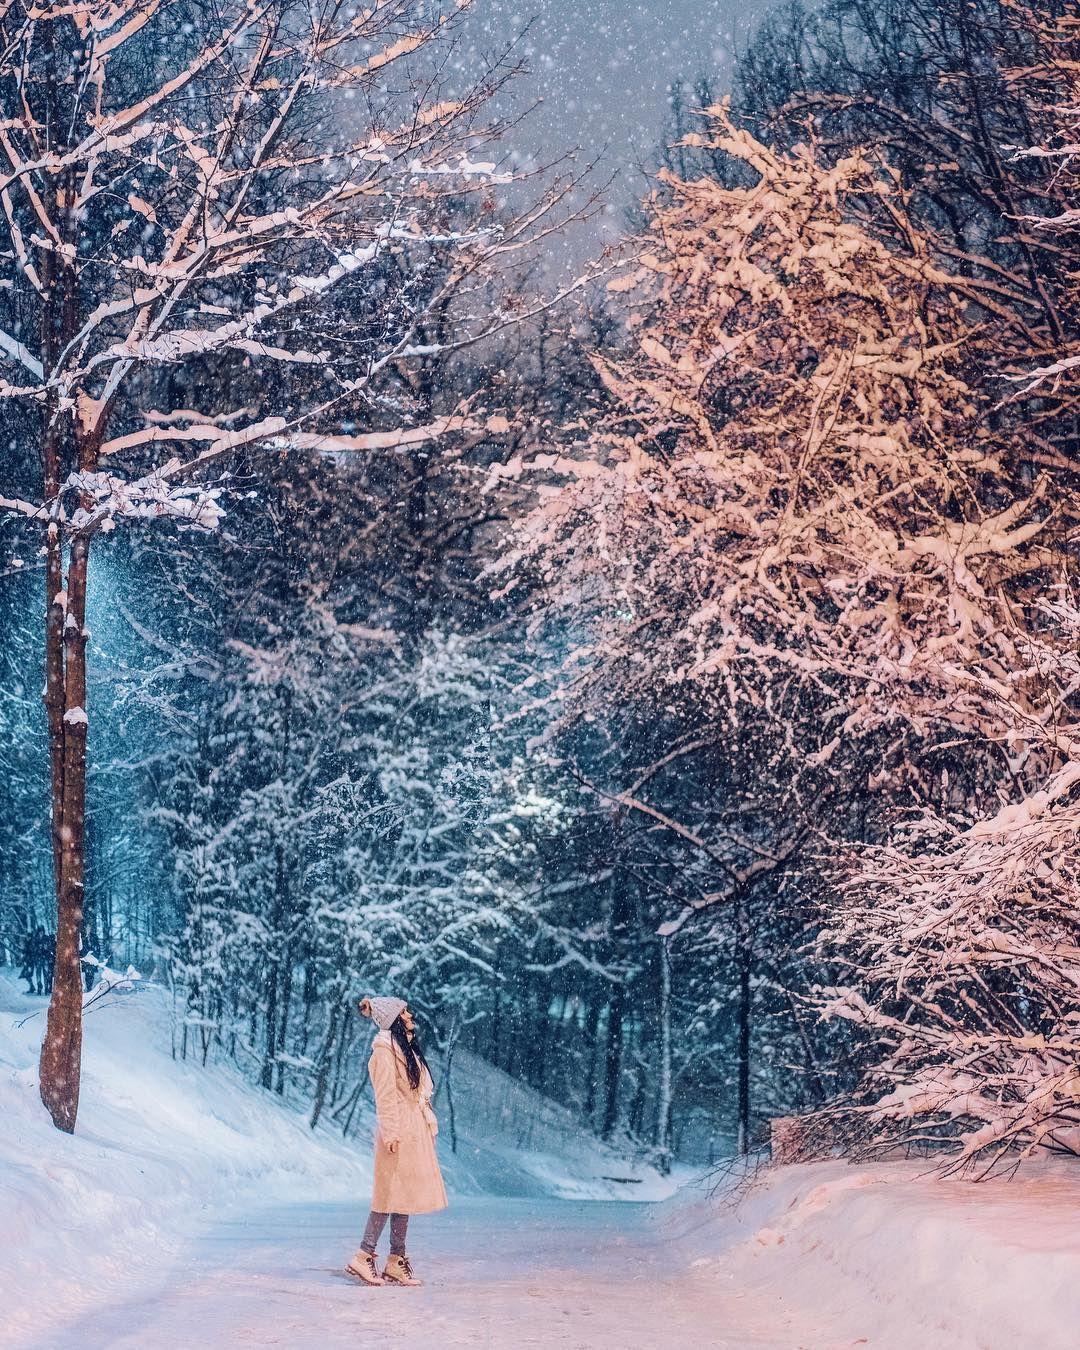 Сказочная зима картинки фотографии